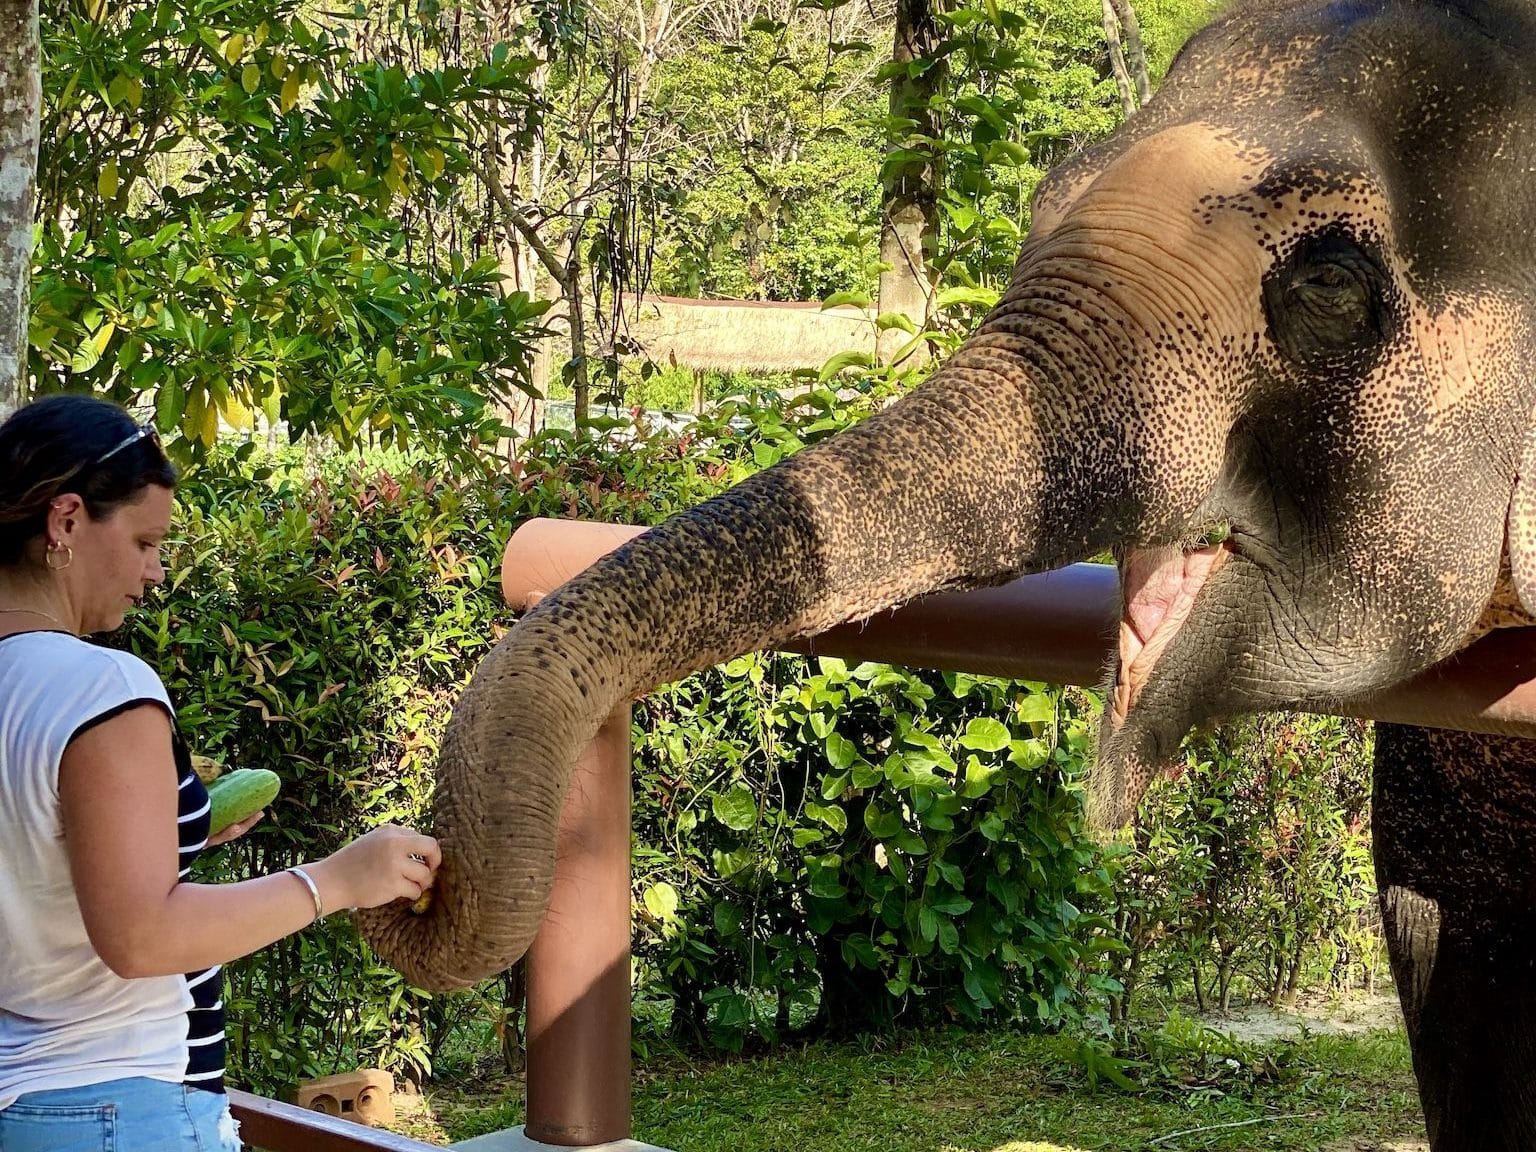 Am Ende der Führung dürfen die Besucher die Elefanten füttern. Foto: Sascha Tegtmeyer